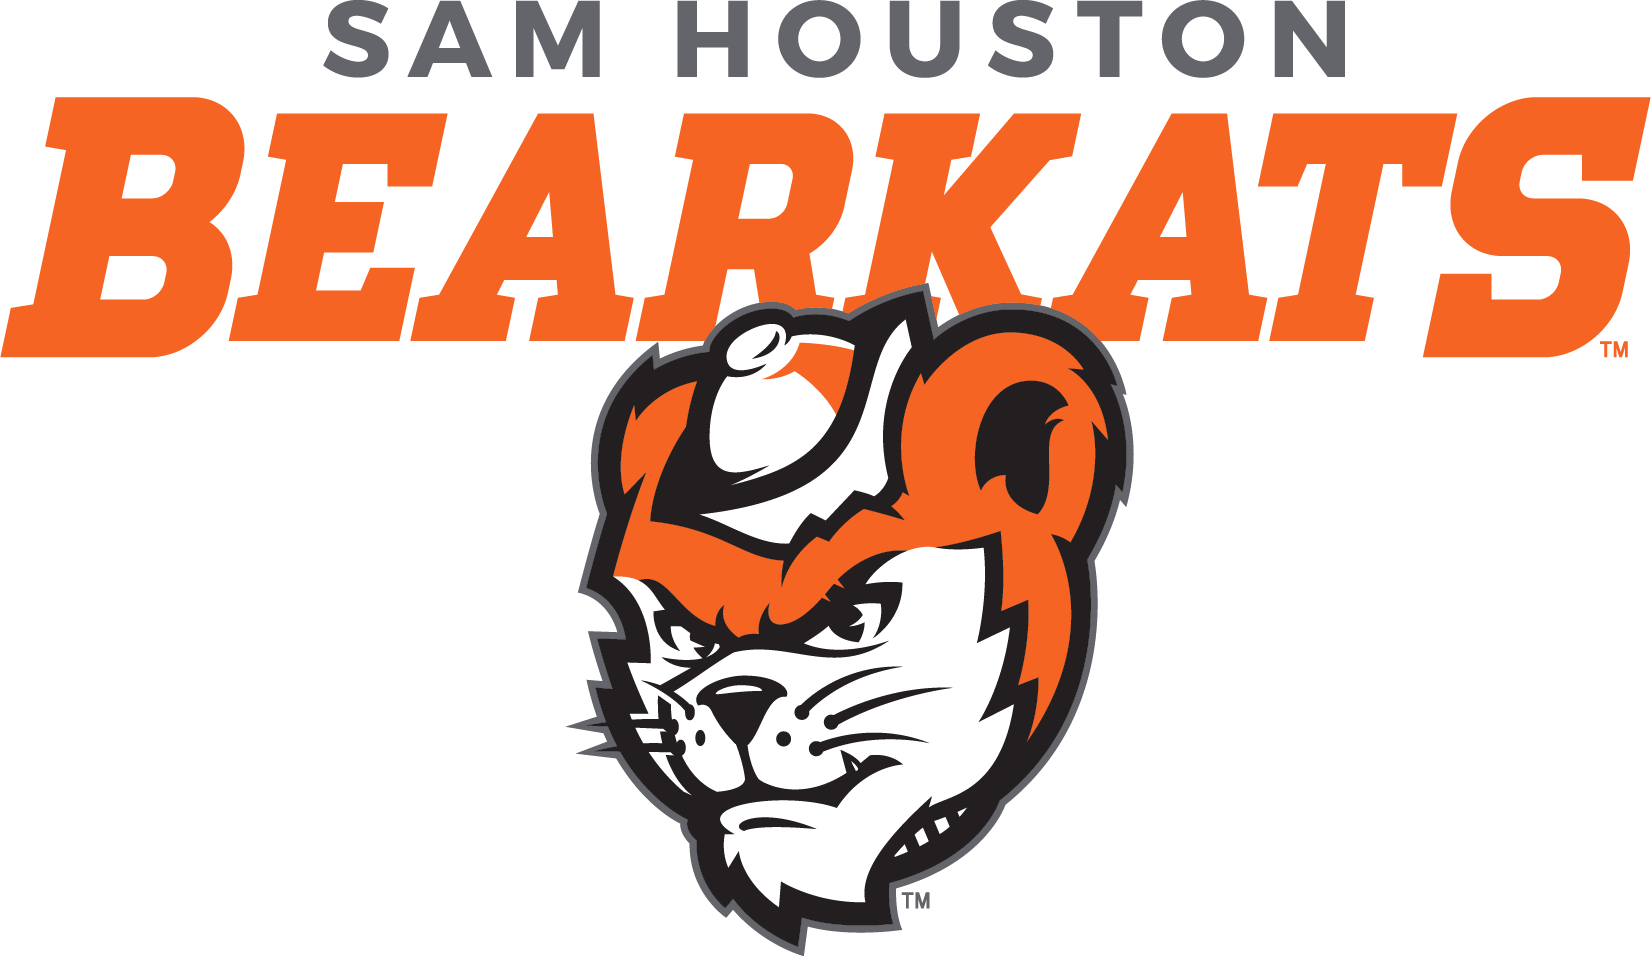 Sam Houston Bearkat.